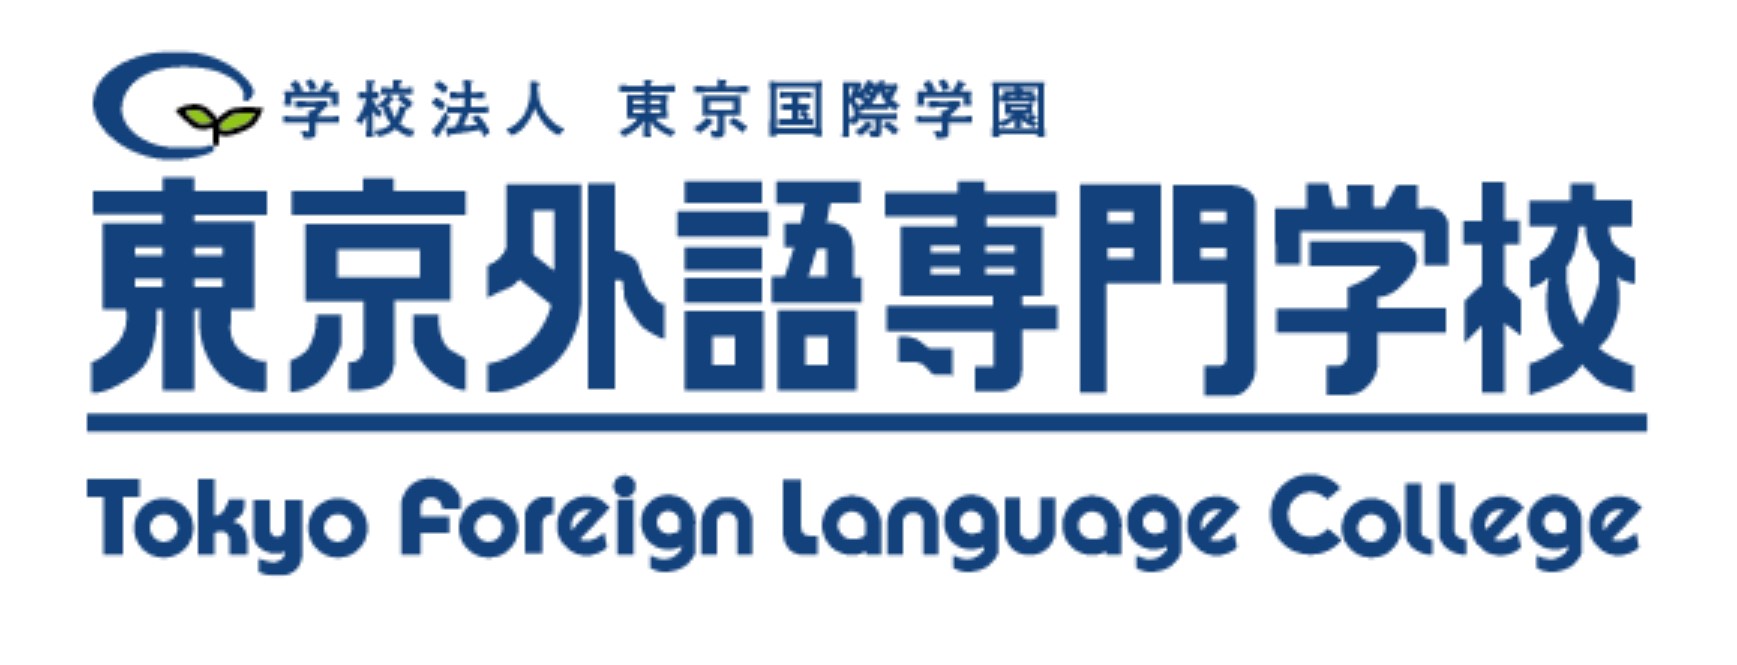 東京外語専門學校 Tokyo Foreign Languag